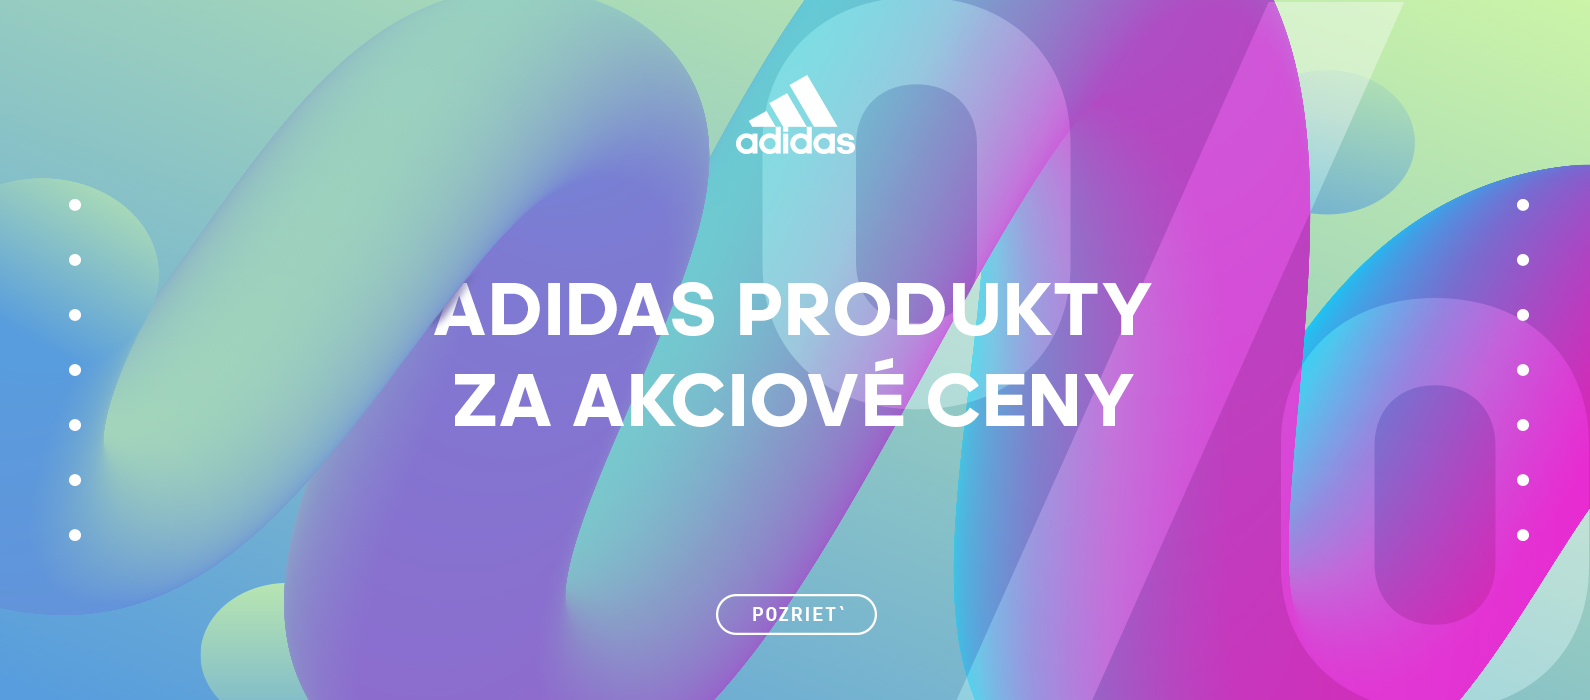 Adidas akció sk